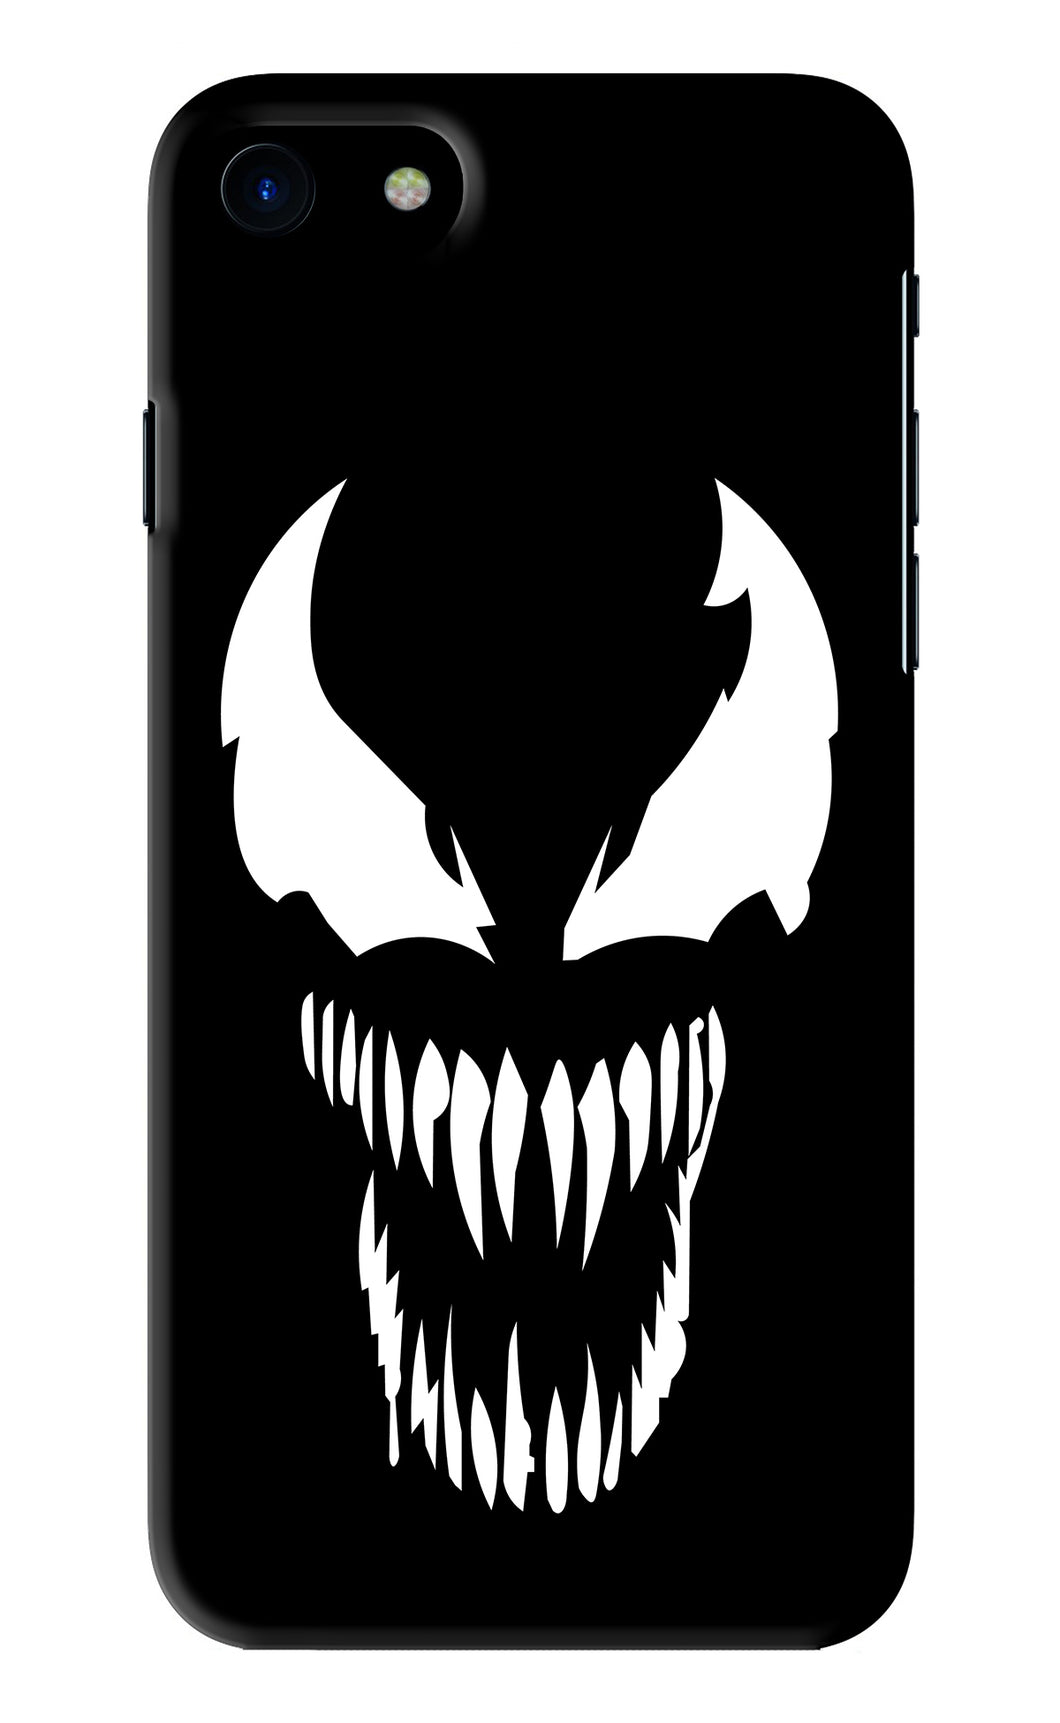 Venom iPhone SE 2020 Back Skin Wrap